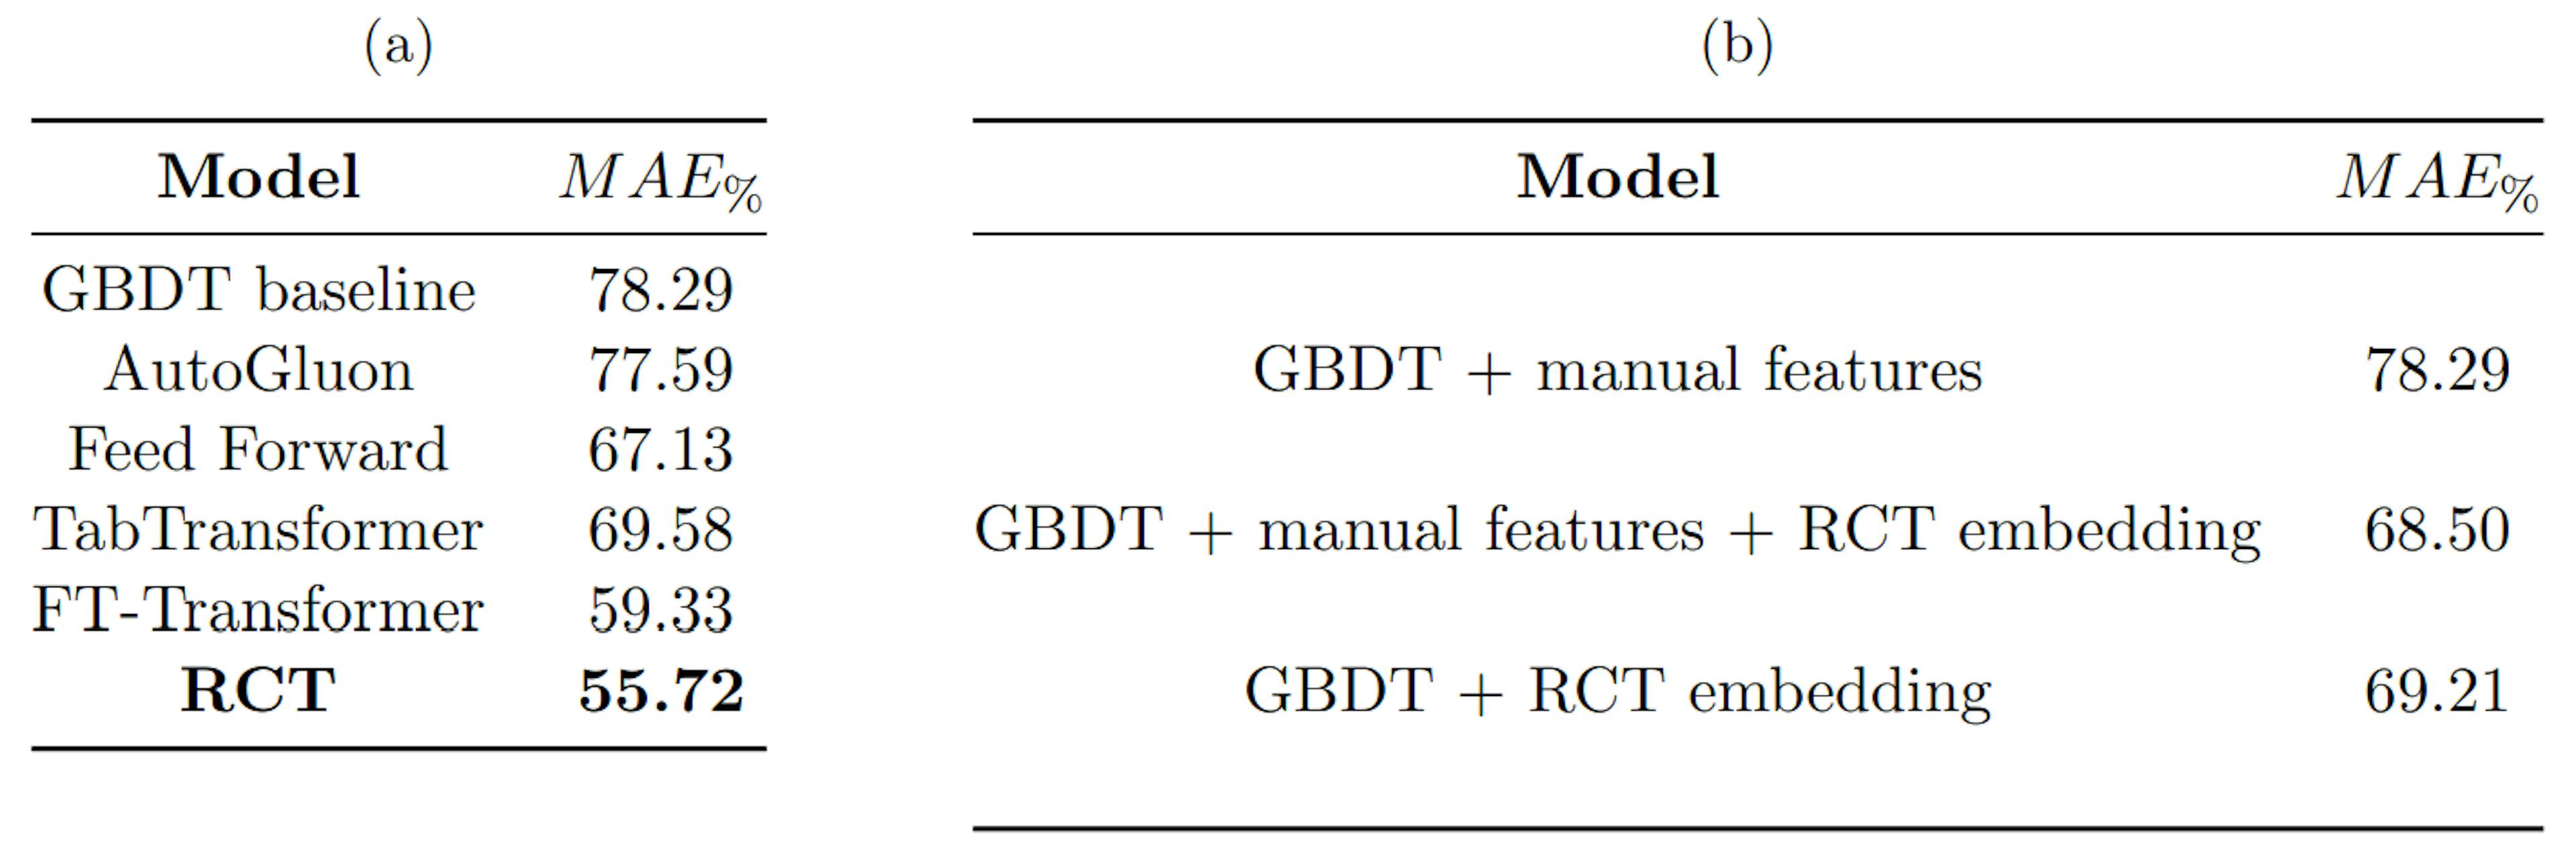 표 1: (a) 다양한 벤치마크에 대해 RCT의 성능을 비교하고, (b) RCT 임베딩으로 훈련된 GBDT와 GBDT 기준의 성능을 비교합니다. MAE%는 수학식 4와 같이 계산됩니다.